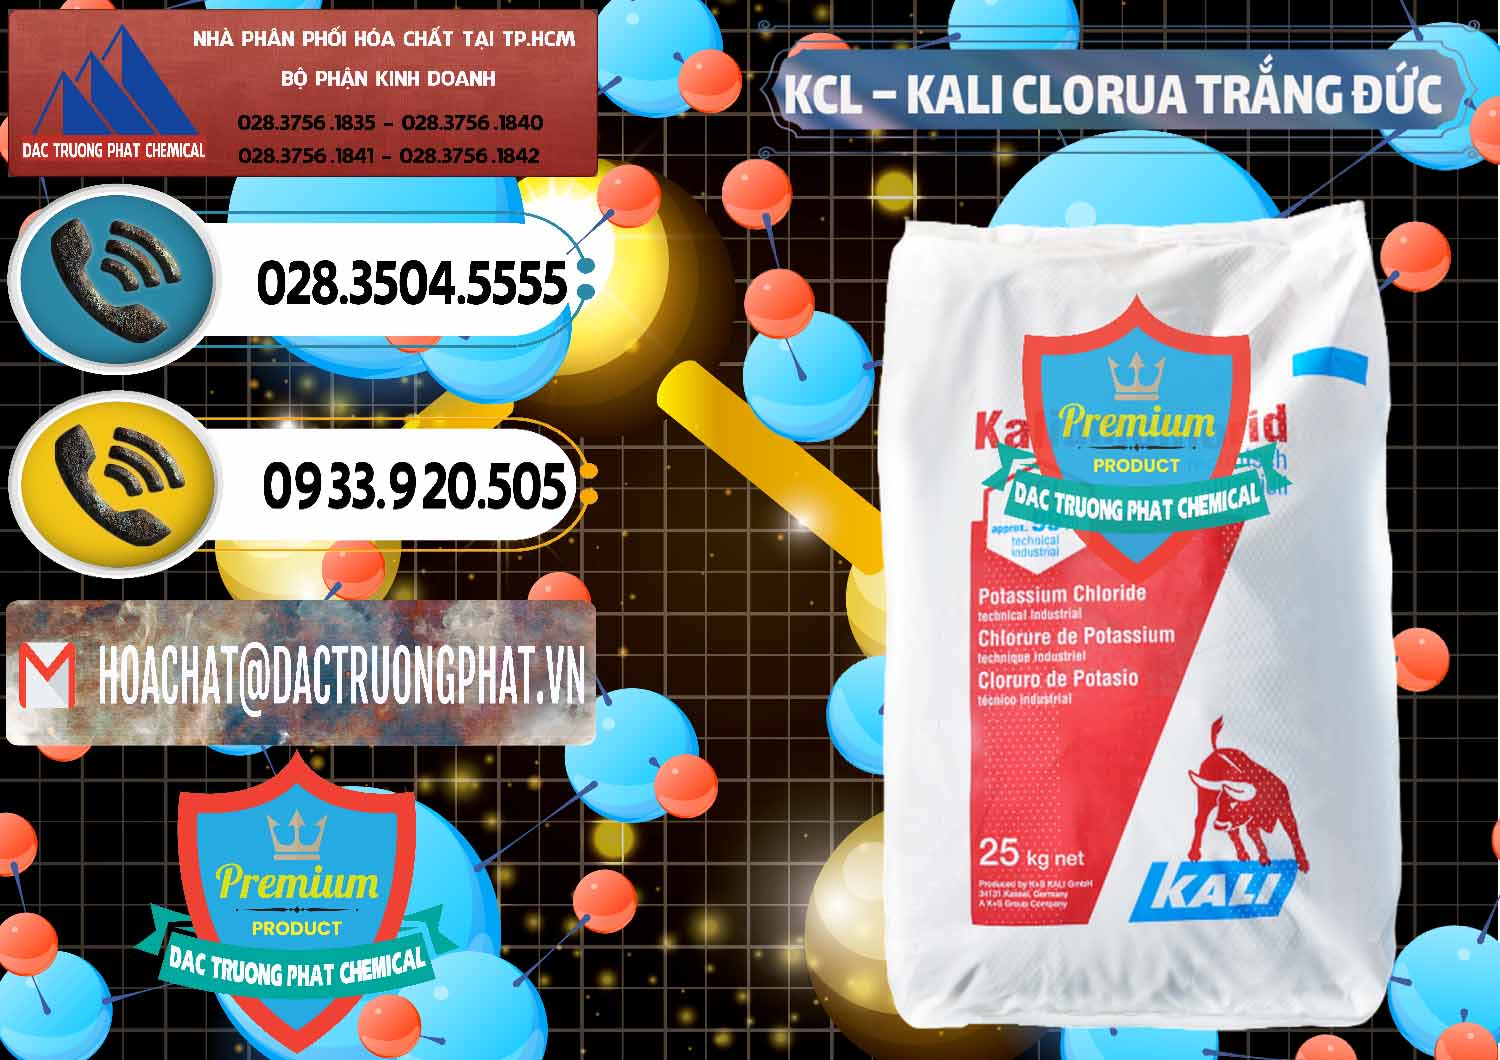 Nơi chuyên bán và cung cấp KCL – Kali Clorua Trắng Đức Germany - 0086 - Cty chuyên bán _ phân phối hóa chất tại TP.HCM - hoachatdetnhuom.vn